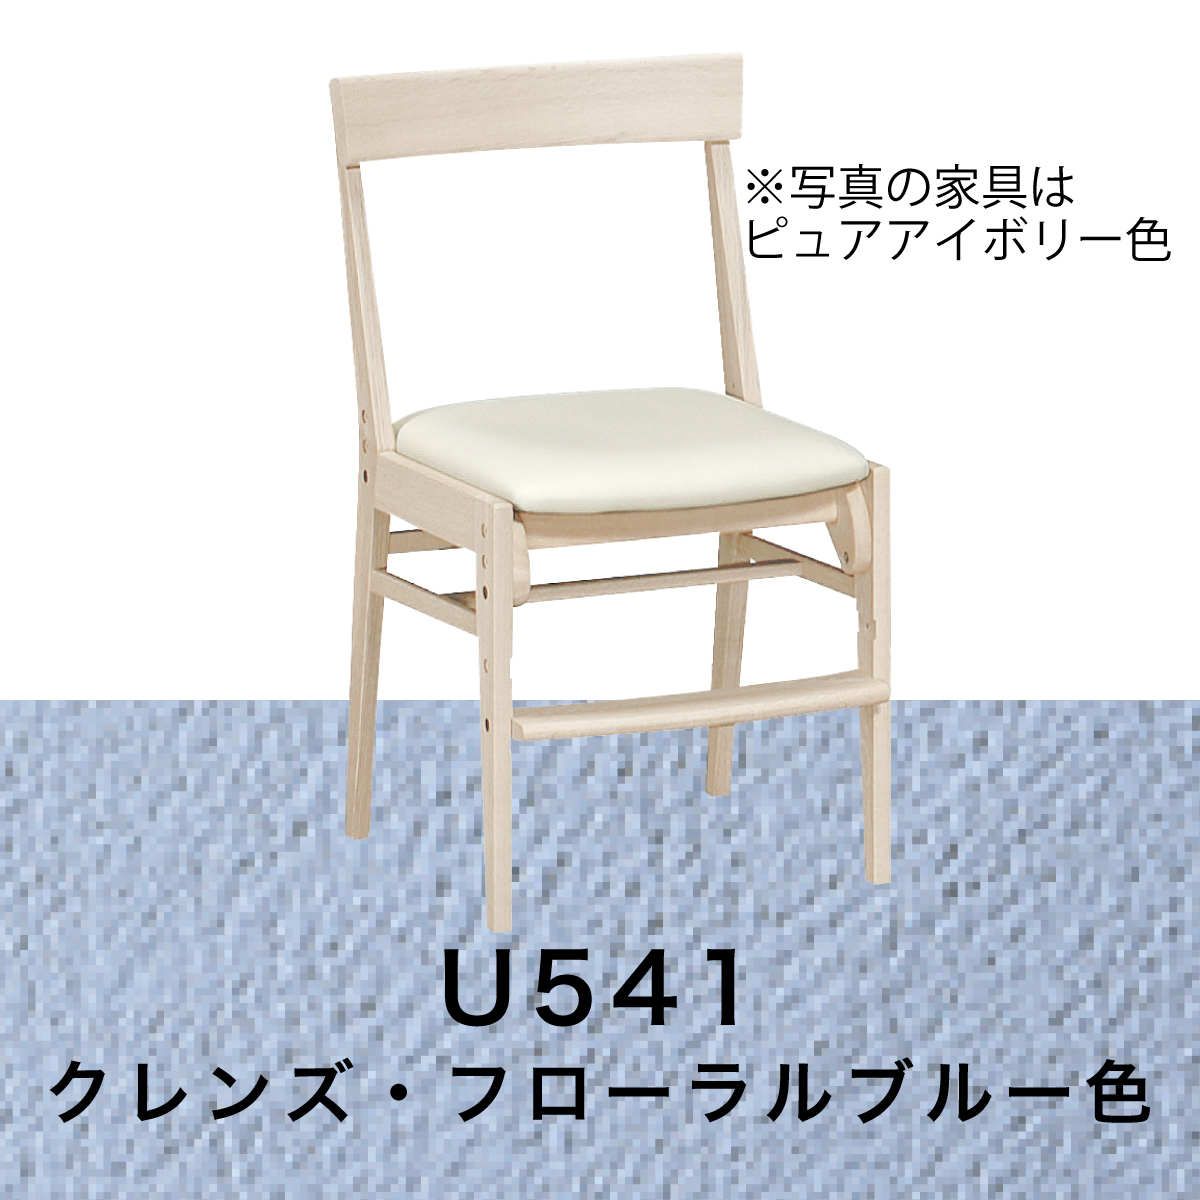 カリモク 椅子 子供 学習椅子 XT0611 木製 シアーホワイト 白 デスクチェア キッズチェア ...